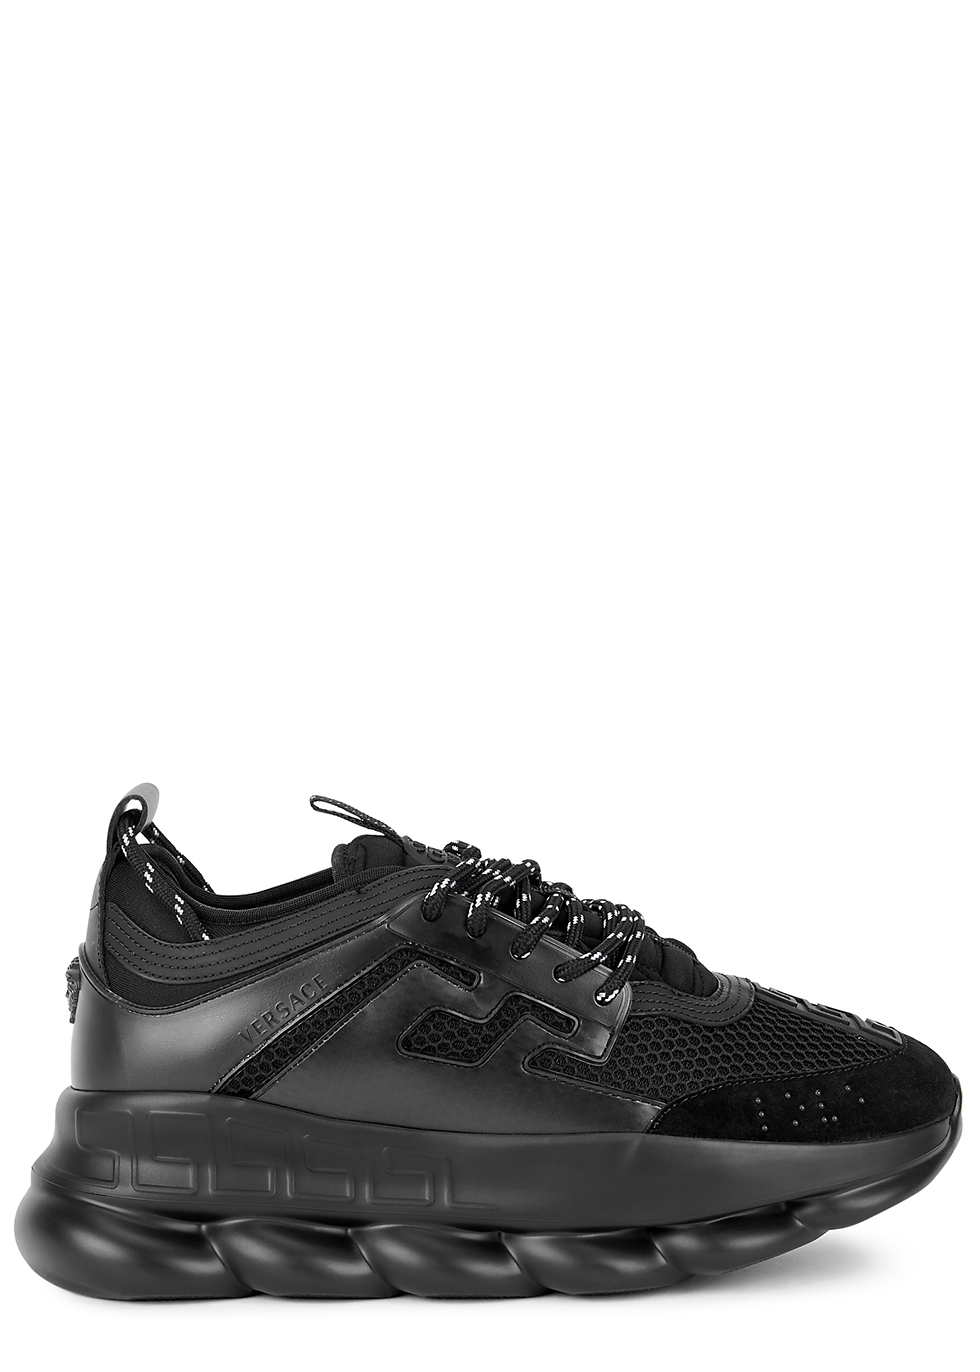 versace sneakers all black